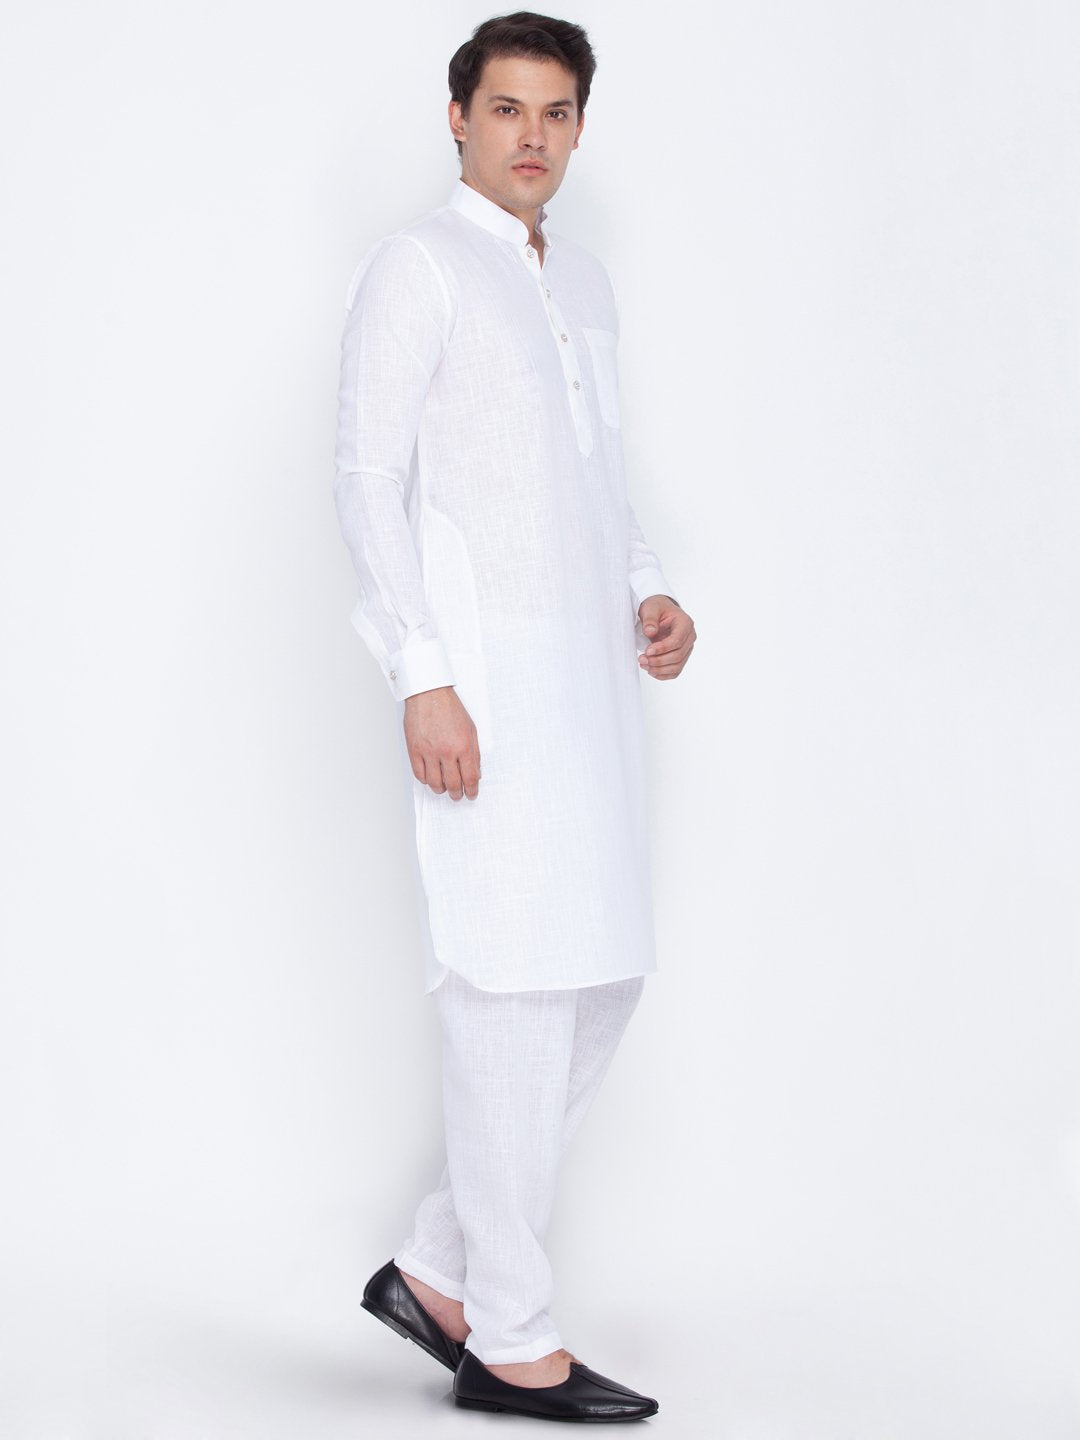 Men's White Cotton Blend Pathani Suit Set